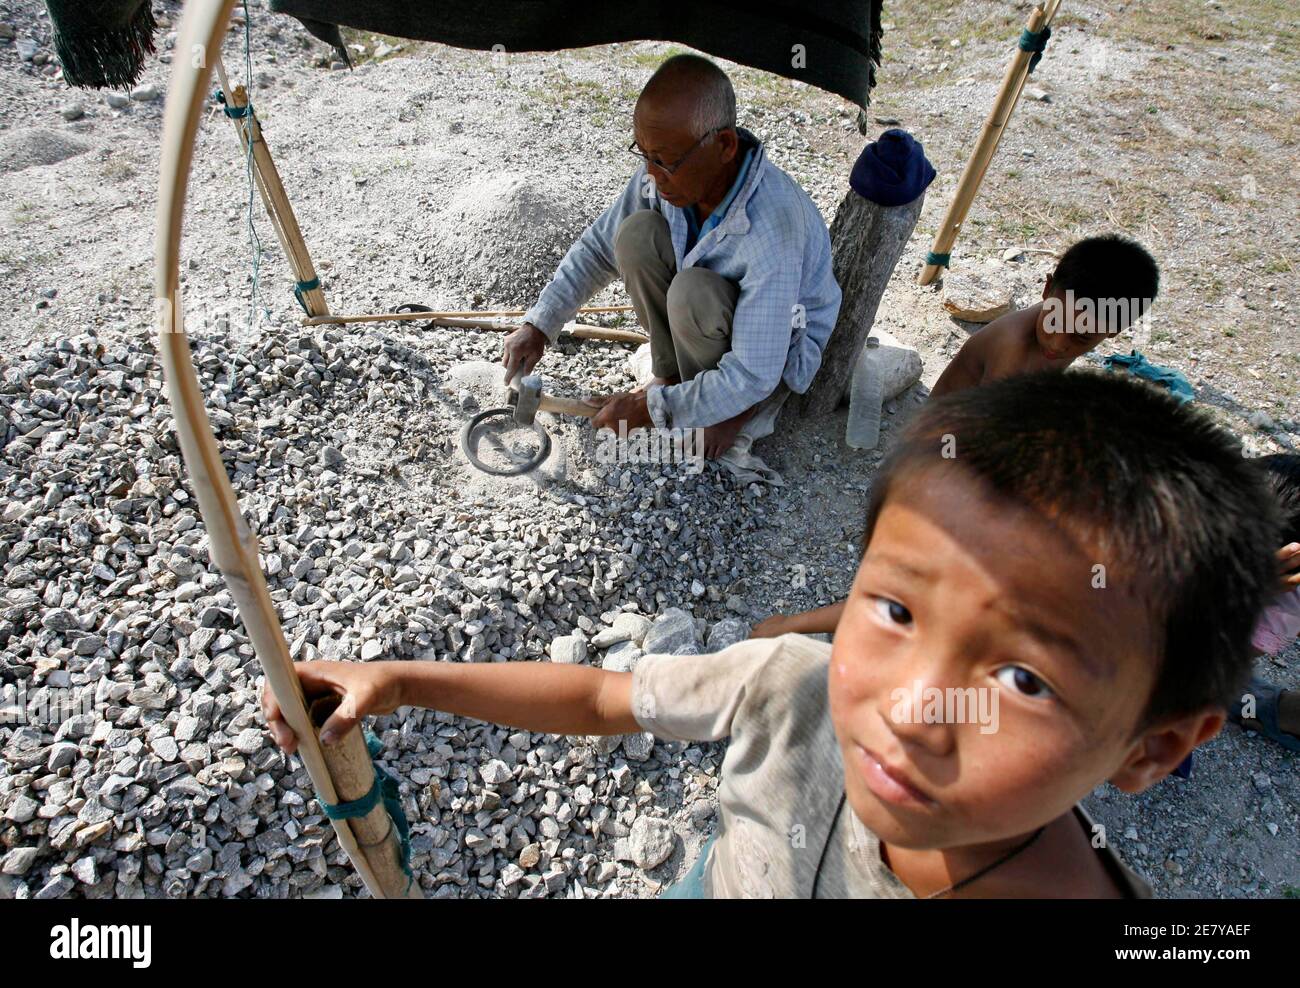 Bhutanische Flüchtlinge arbeiten im Flüchtlingslager Timai in Nepal am 15. April 2007. Während sich das isolierte Himalaya-Königreich Bhutan auf historische Wahlen vorbereitet, appellieren viele der 100,000 Flüchtlinge, die außerhalb des Landes schmachten, für die Chance, zurückzukehren und teilzunehmen. Bild aufgenommen am 15. April 2007. REUTERS/Desmond Boylan (NEPAL) Stockfoto